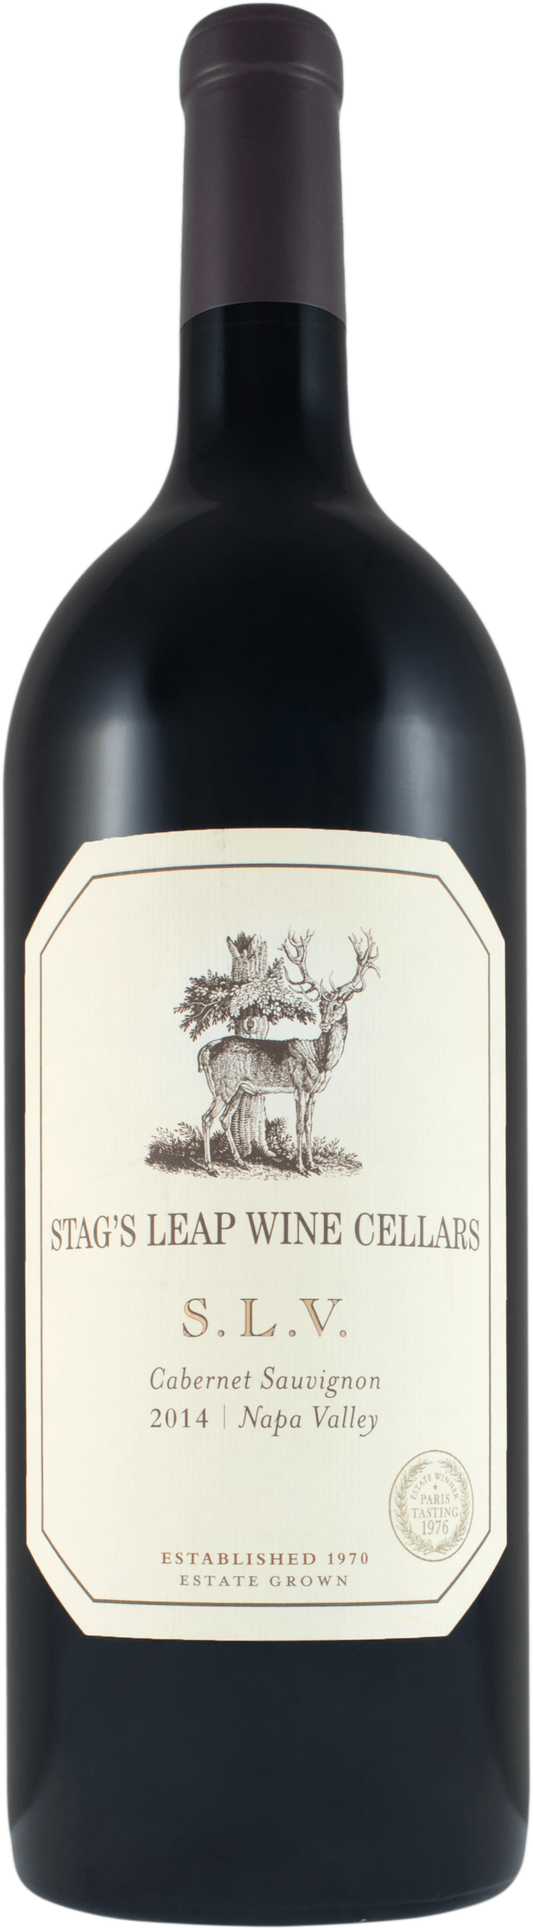 Stag's Leap Wine Cellars SLV Cabernet Sauvignon 2015 (1x300cl) - TwoMoreGlasses.com